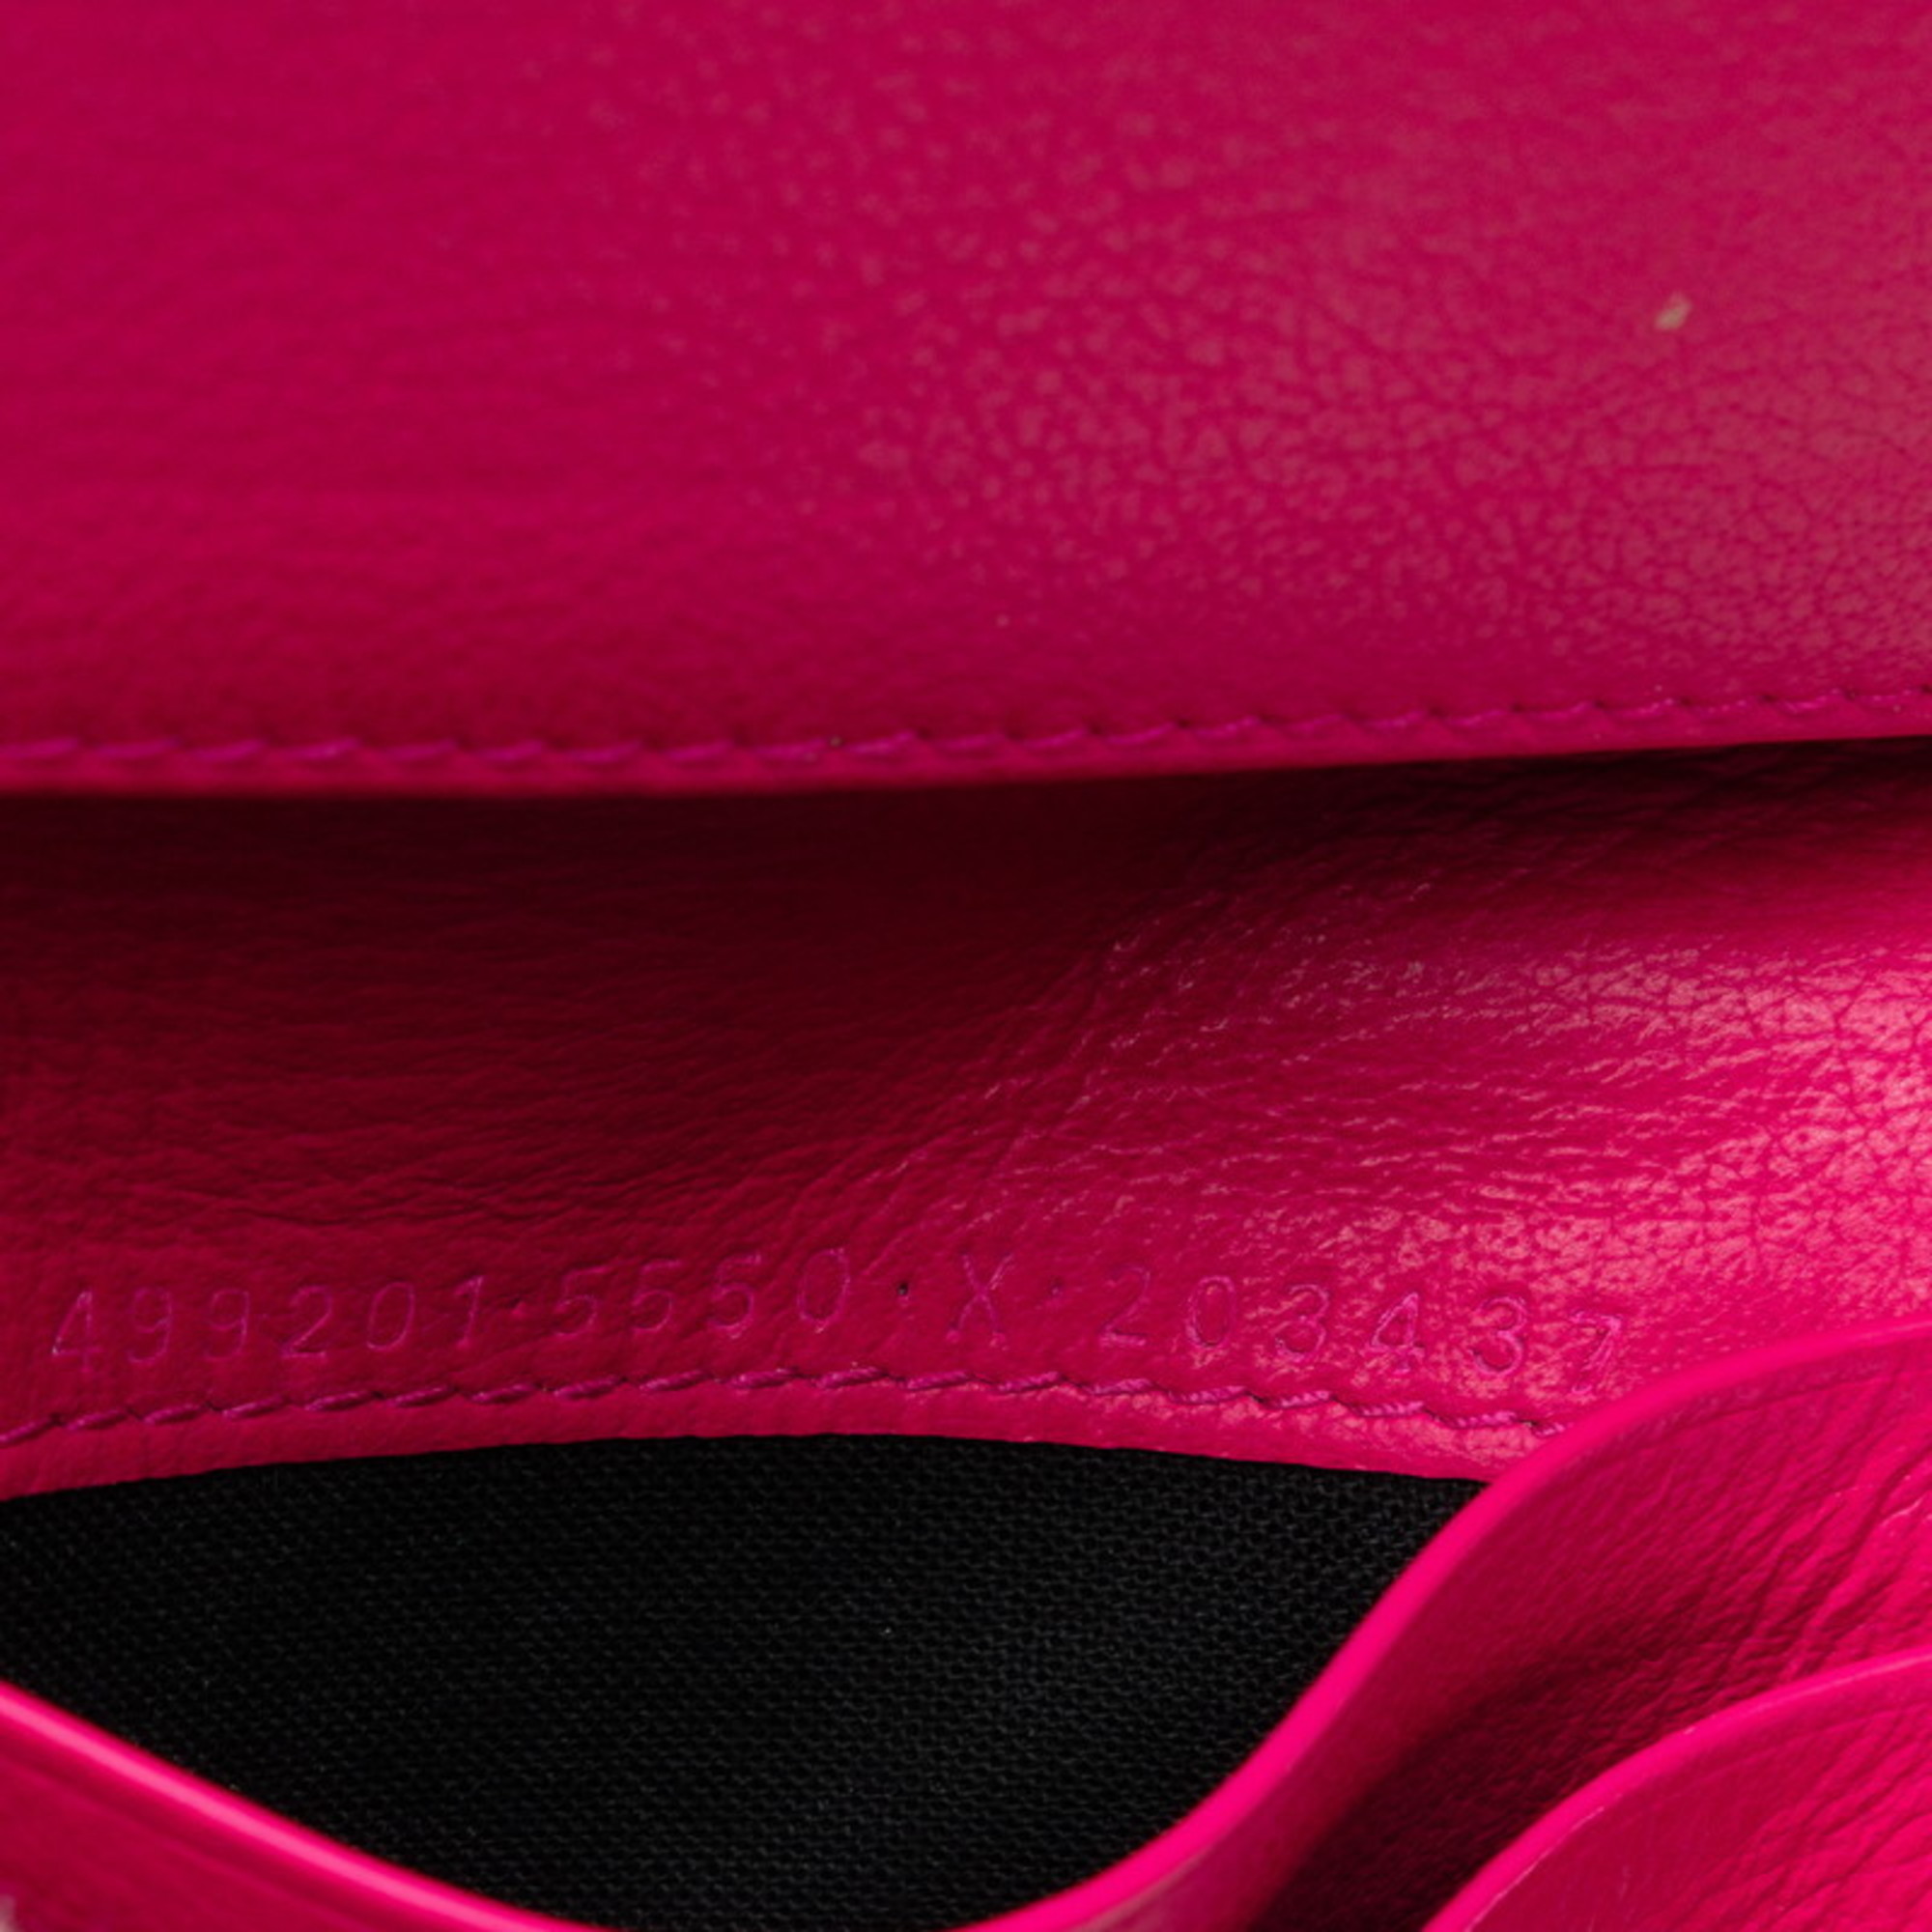 Balenciaga Card Case, Pass Business Holder 499201 Pink Leather Women's BALENCIAGA